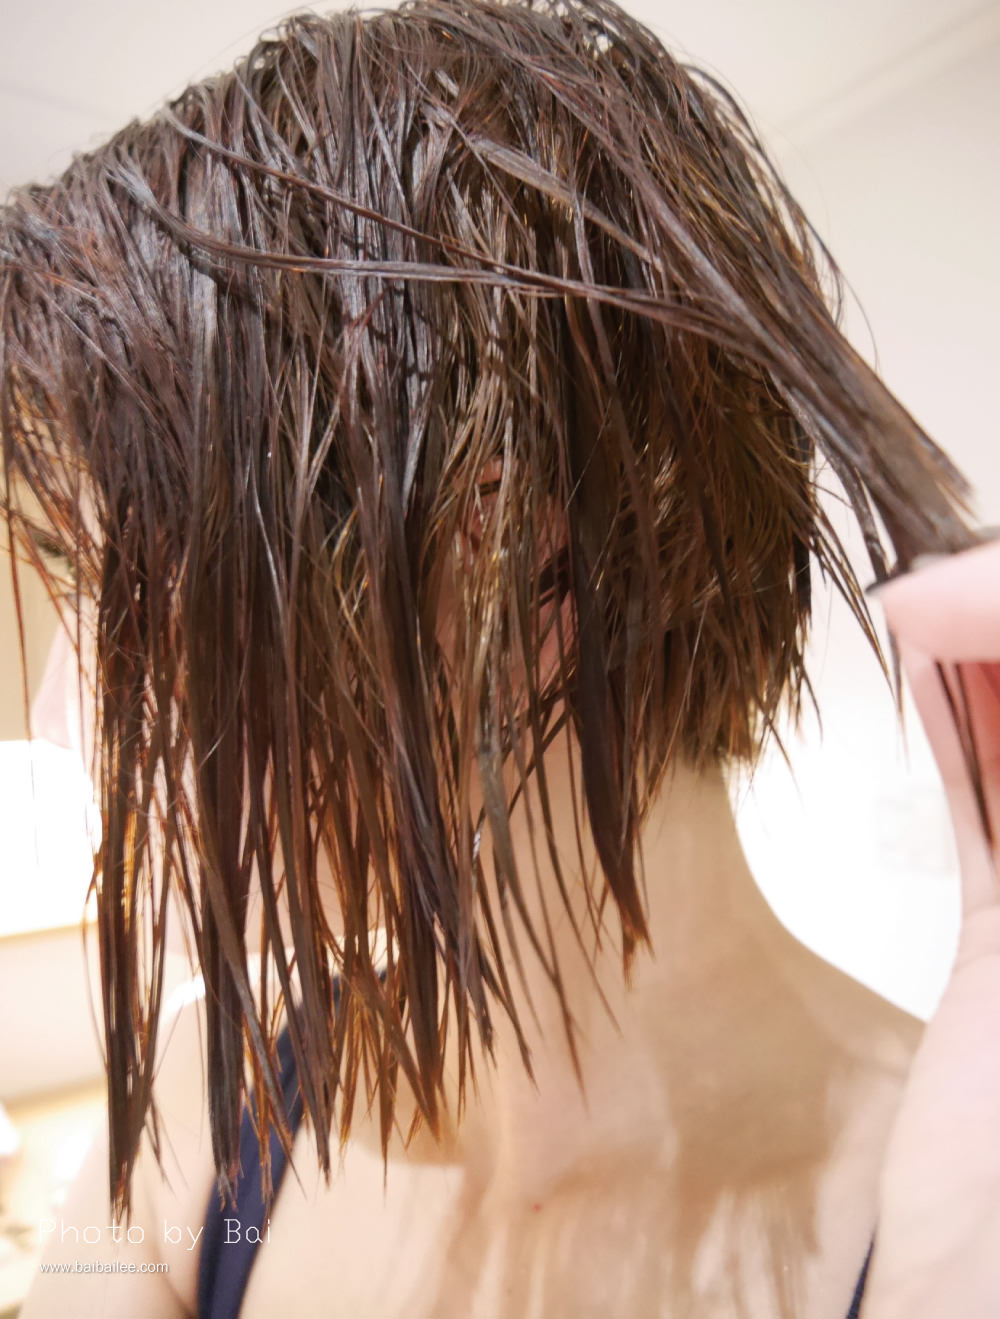 [髮品] 改善分岔毛躁,乾燥受損髮及油頭人都能簡單擁有柔順有光澤的秀髮-HERBMAZE草繹迷迭香輕盈護髮膜/天竺葵亮澤護髮膜